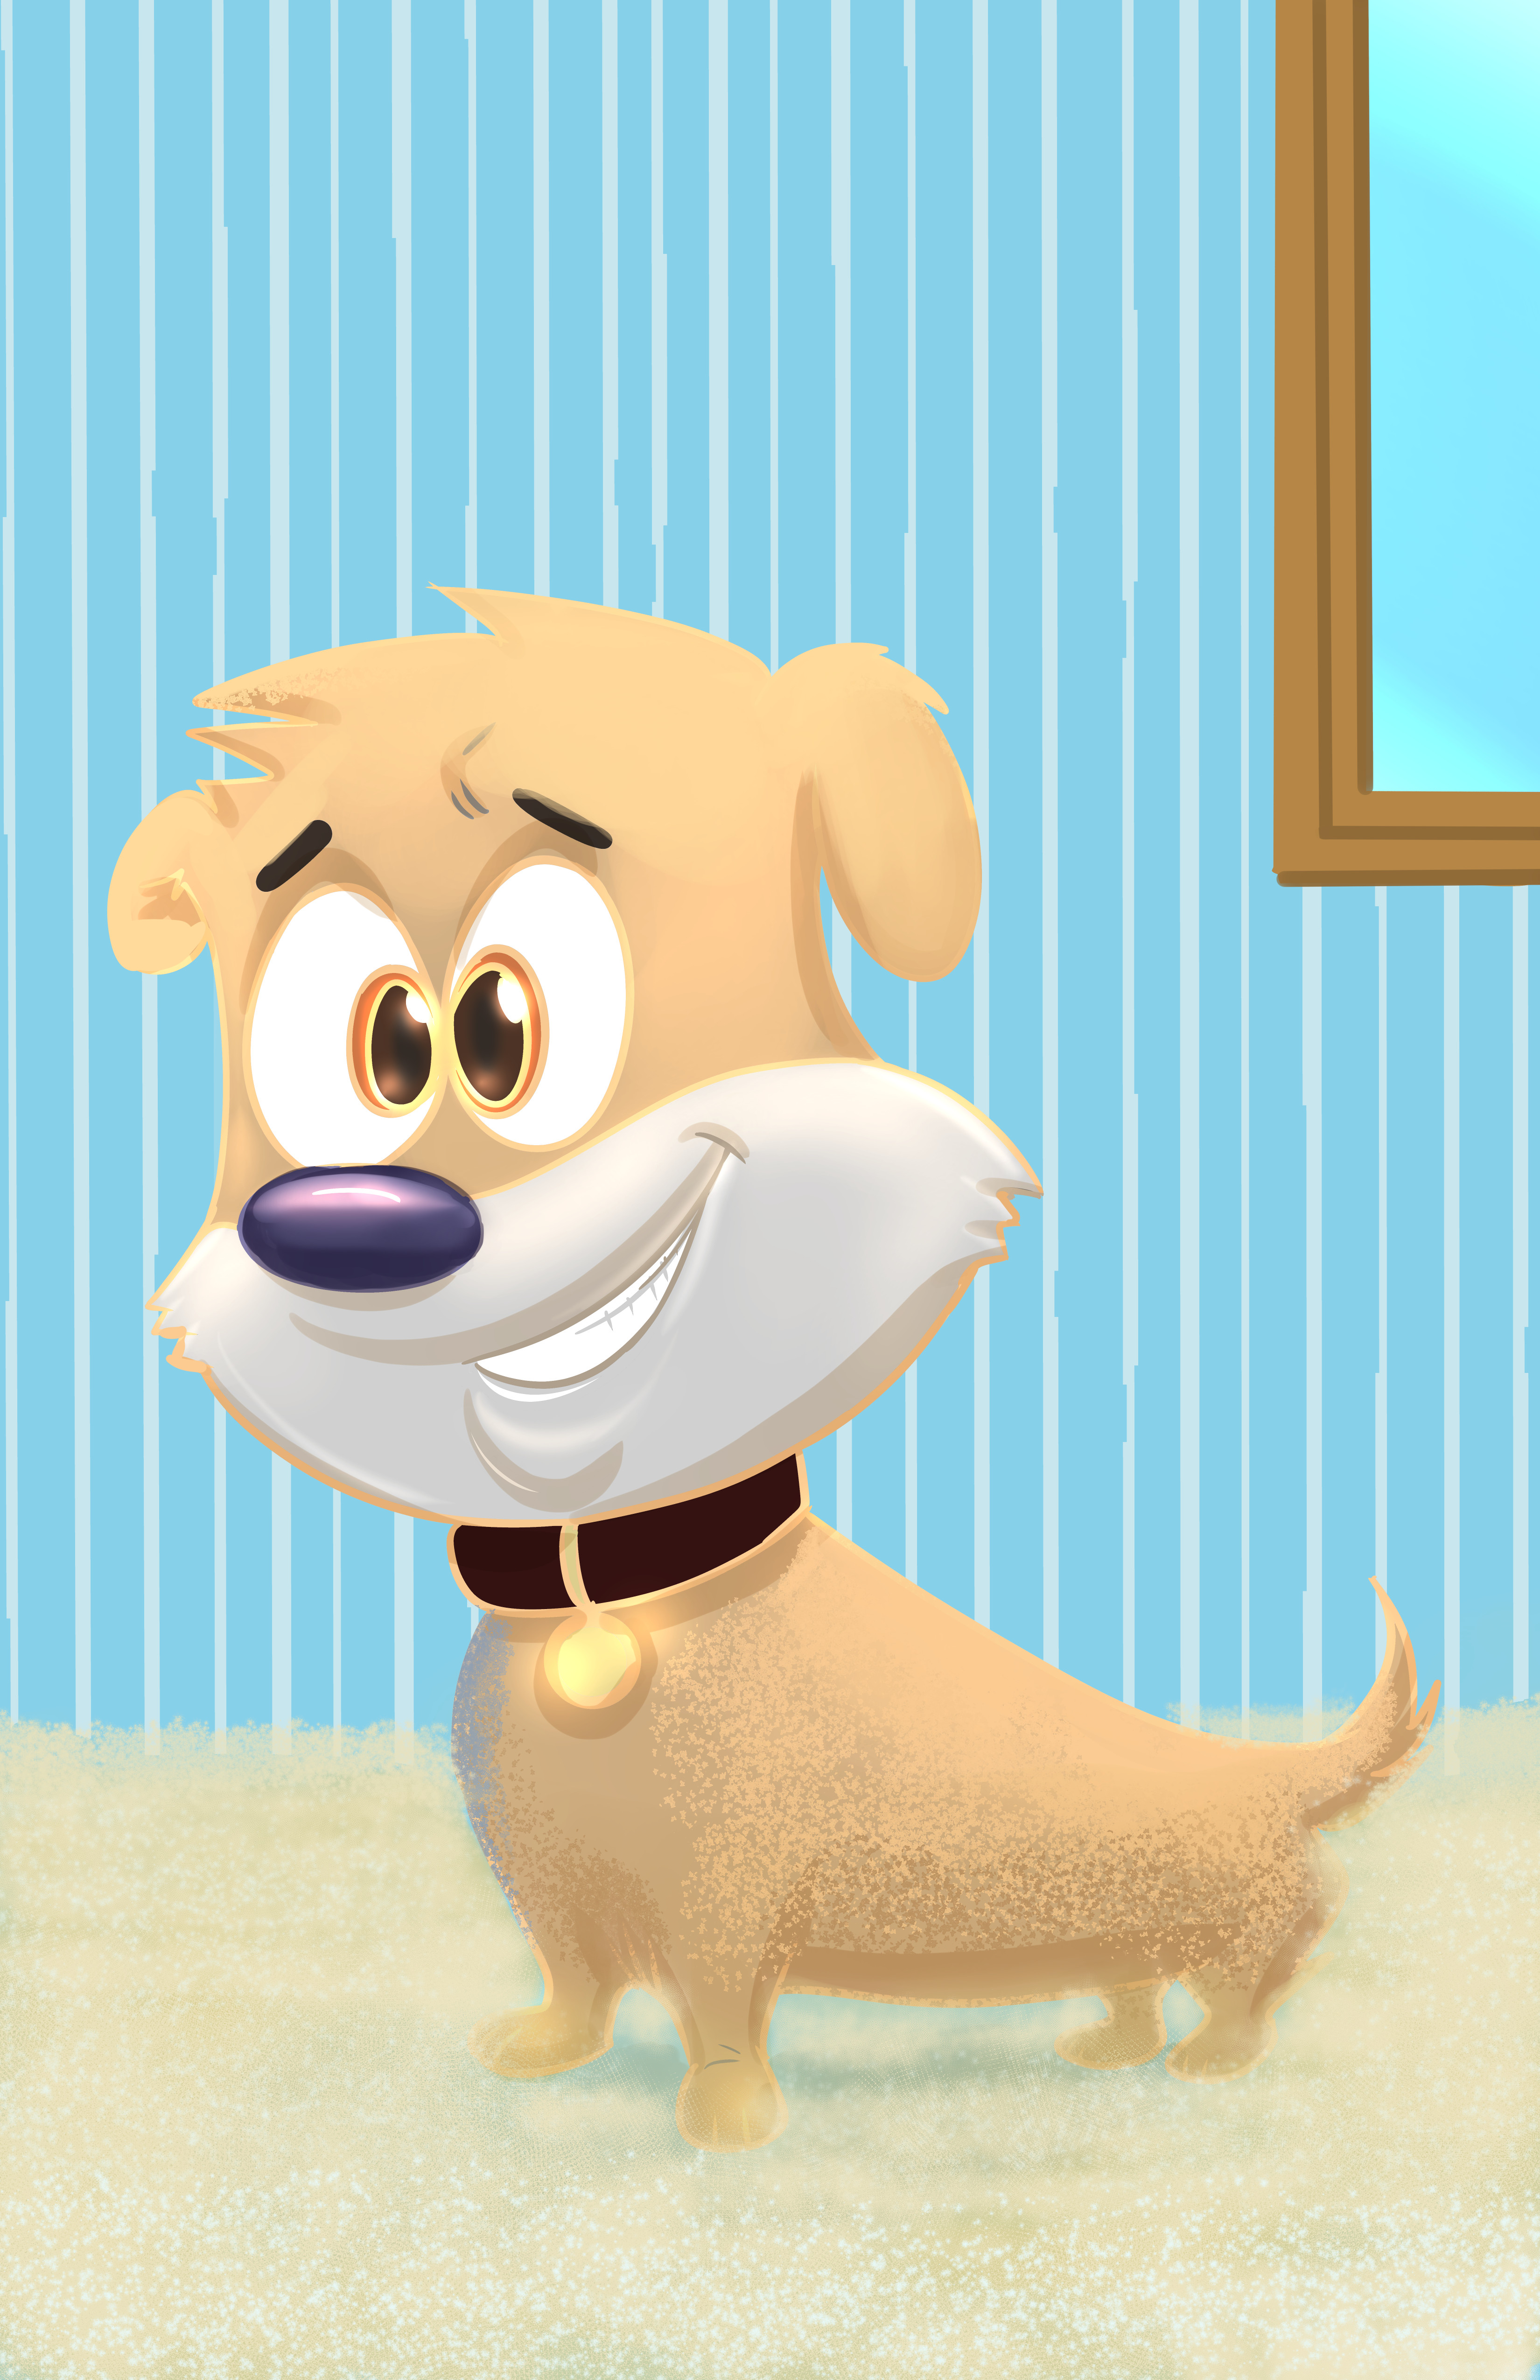 ArtStation - Cartoon Dog